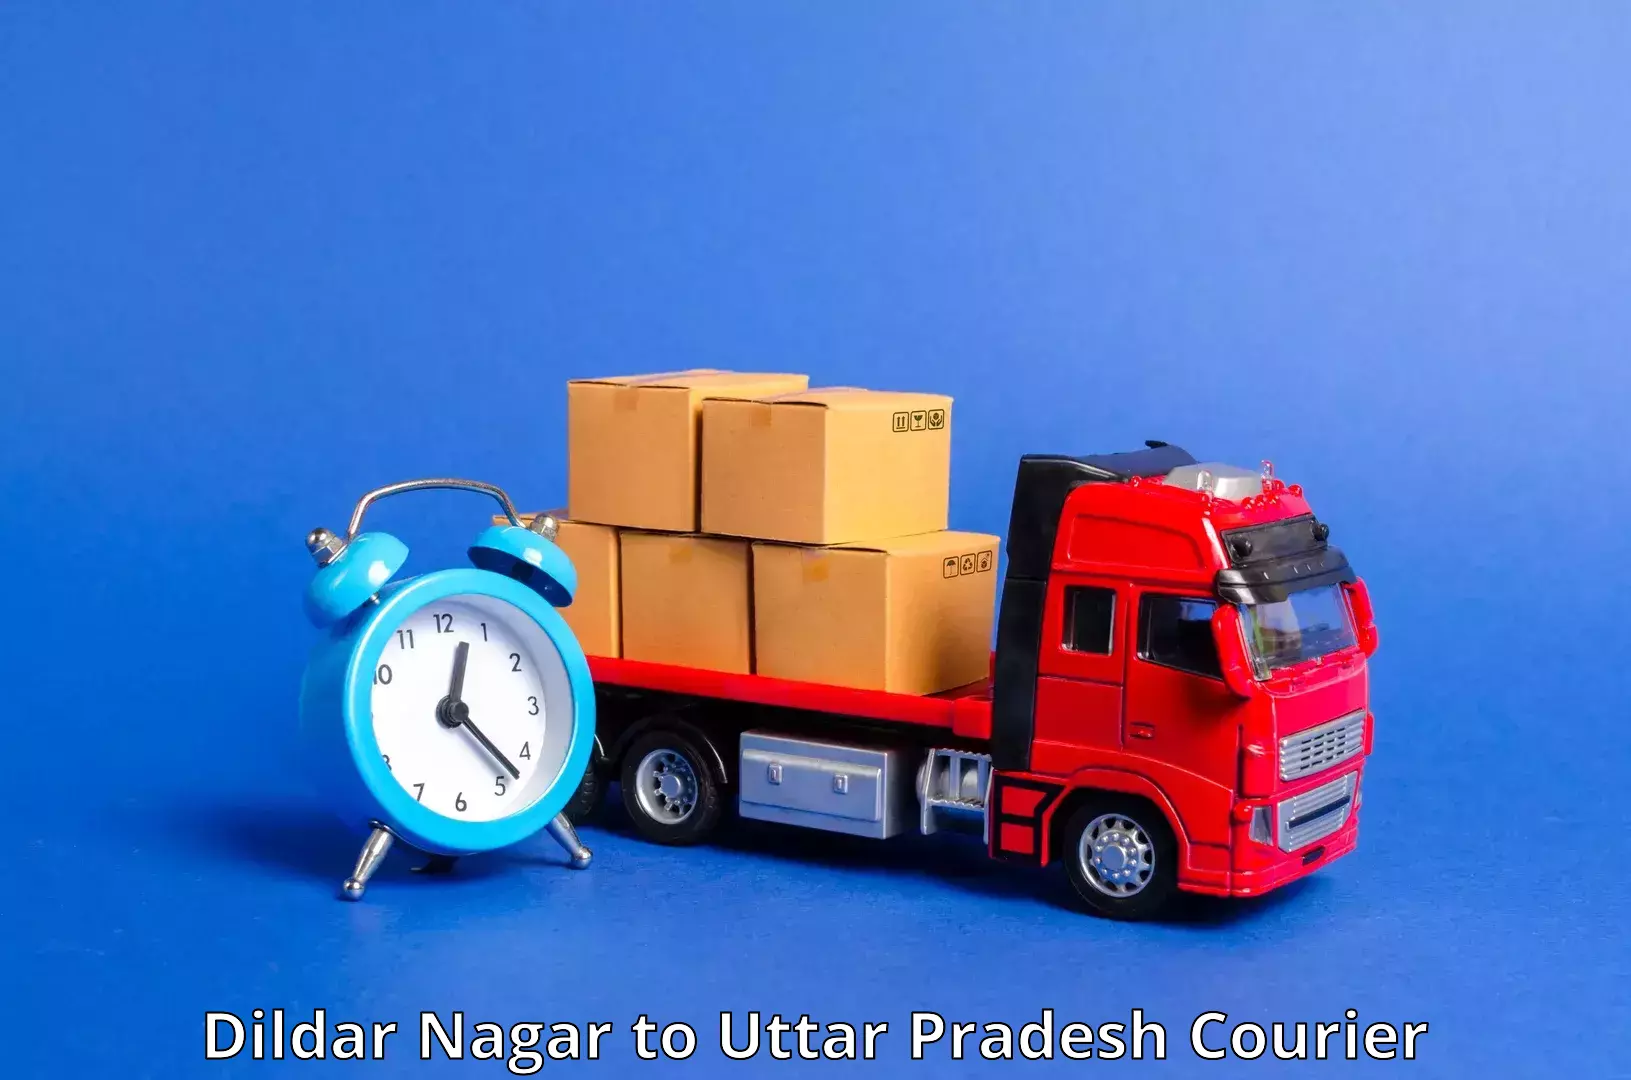 Parcel service for businesses Dildar Nagar to Dhanghata